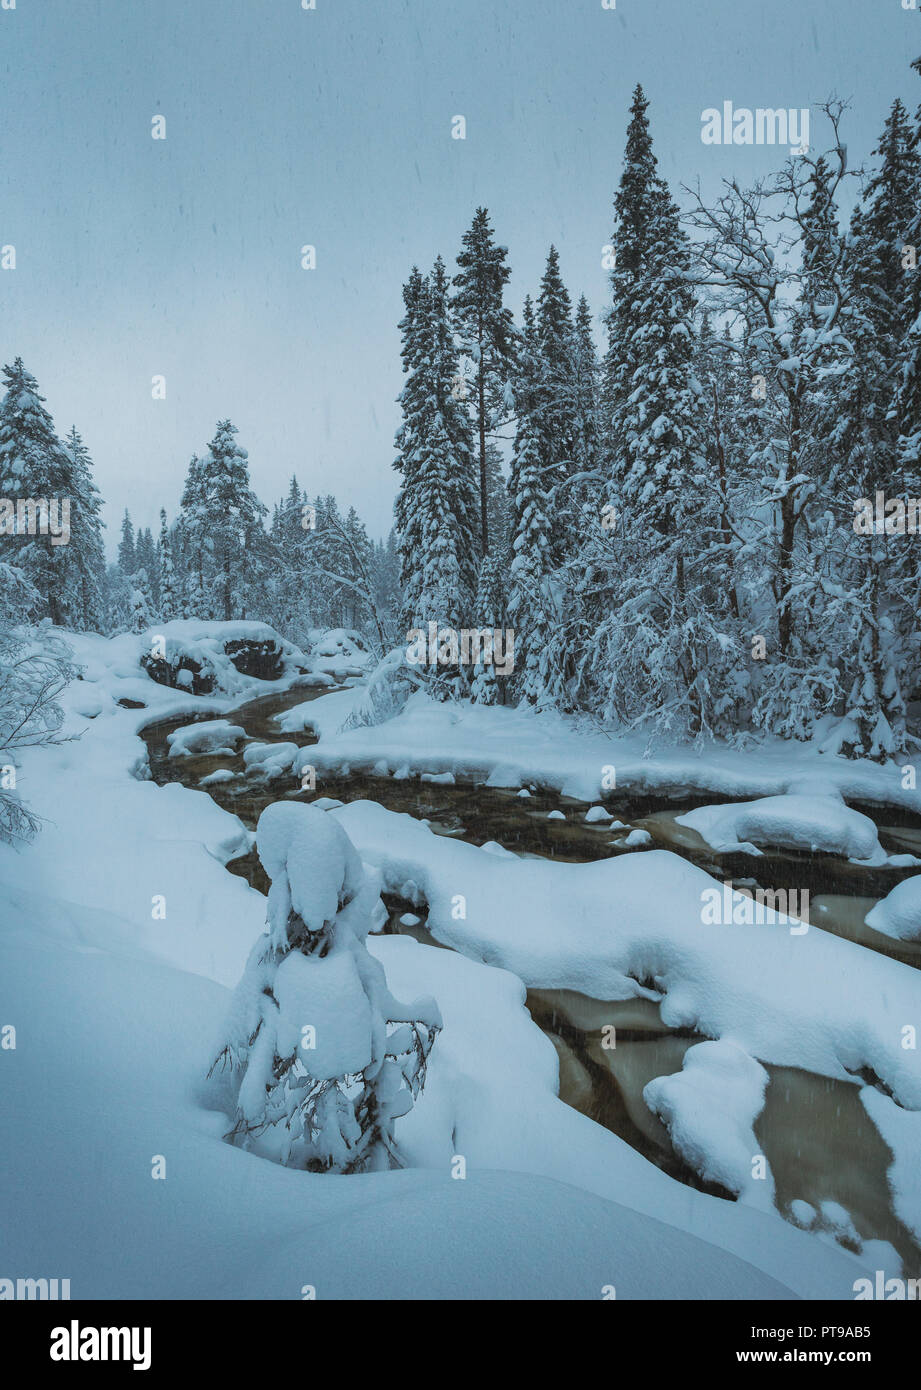 La couverture de neige fraîche sur près de la forêt boréale, l'EIES Grong, le nord de la Norvège. L'heure d'hiver fantastique. Banque D'Images